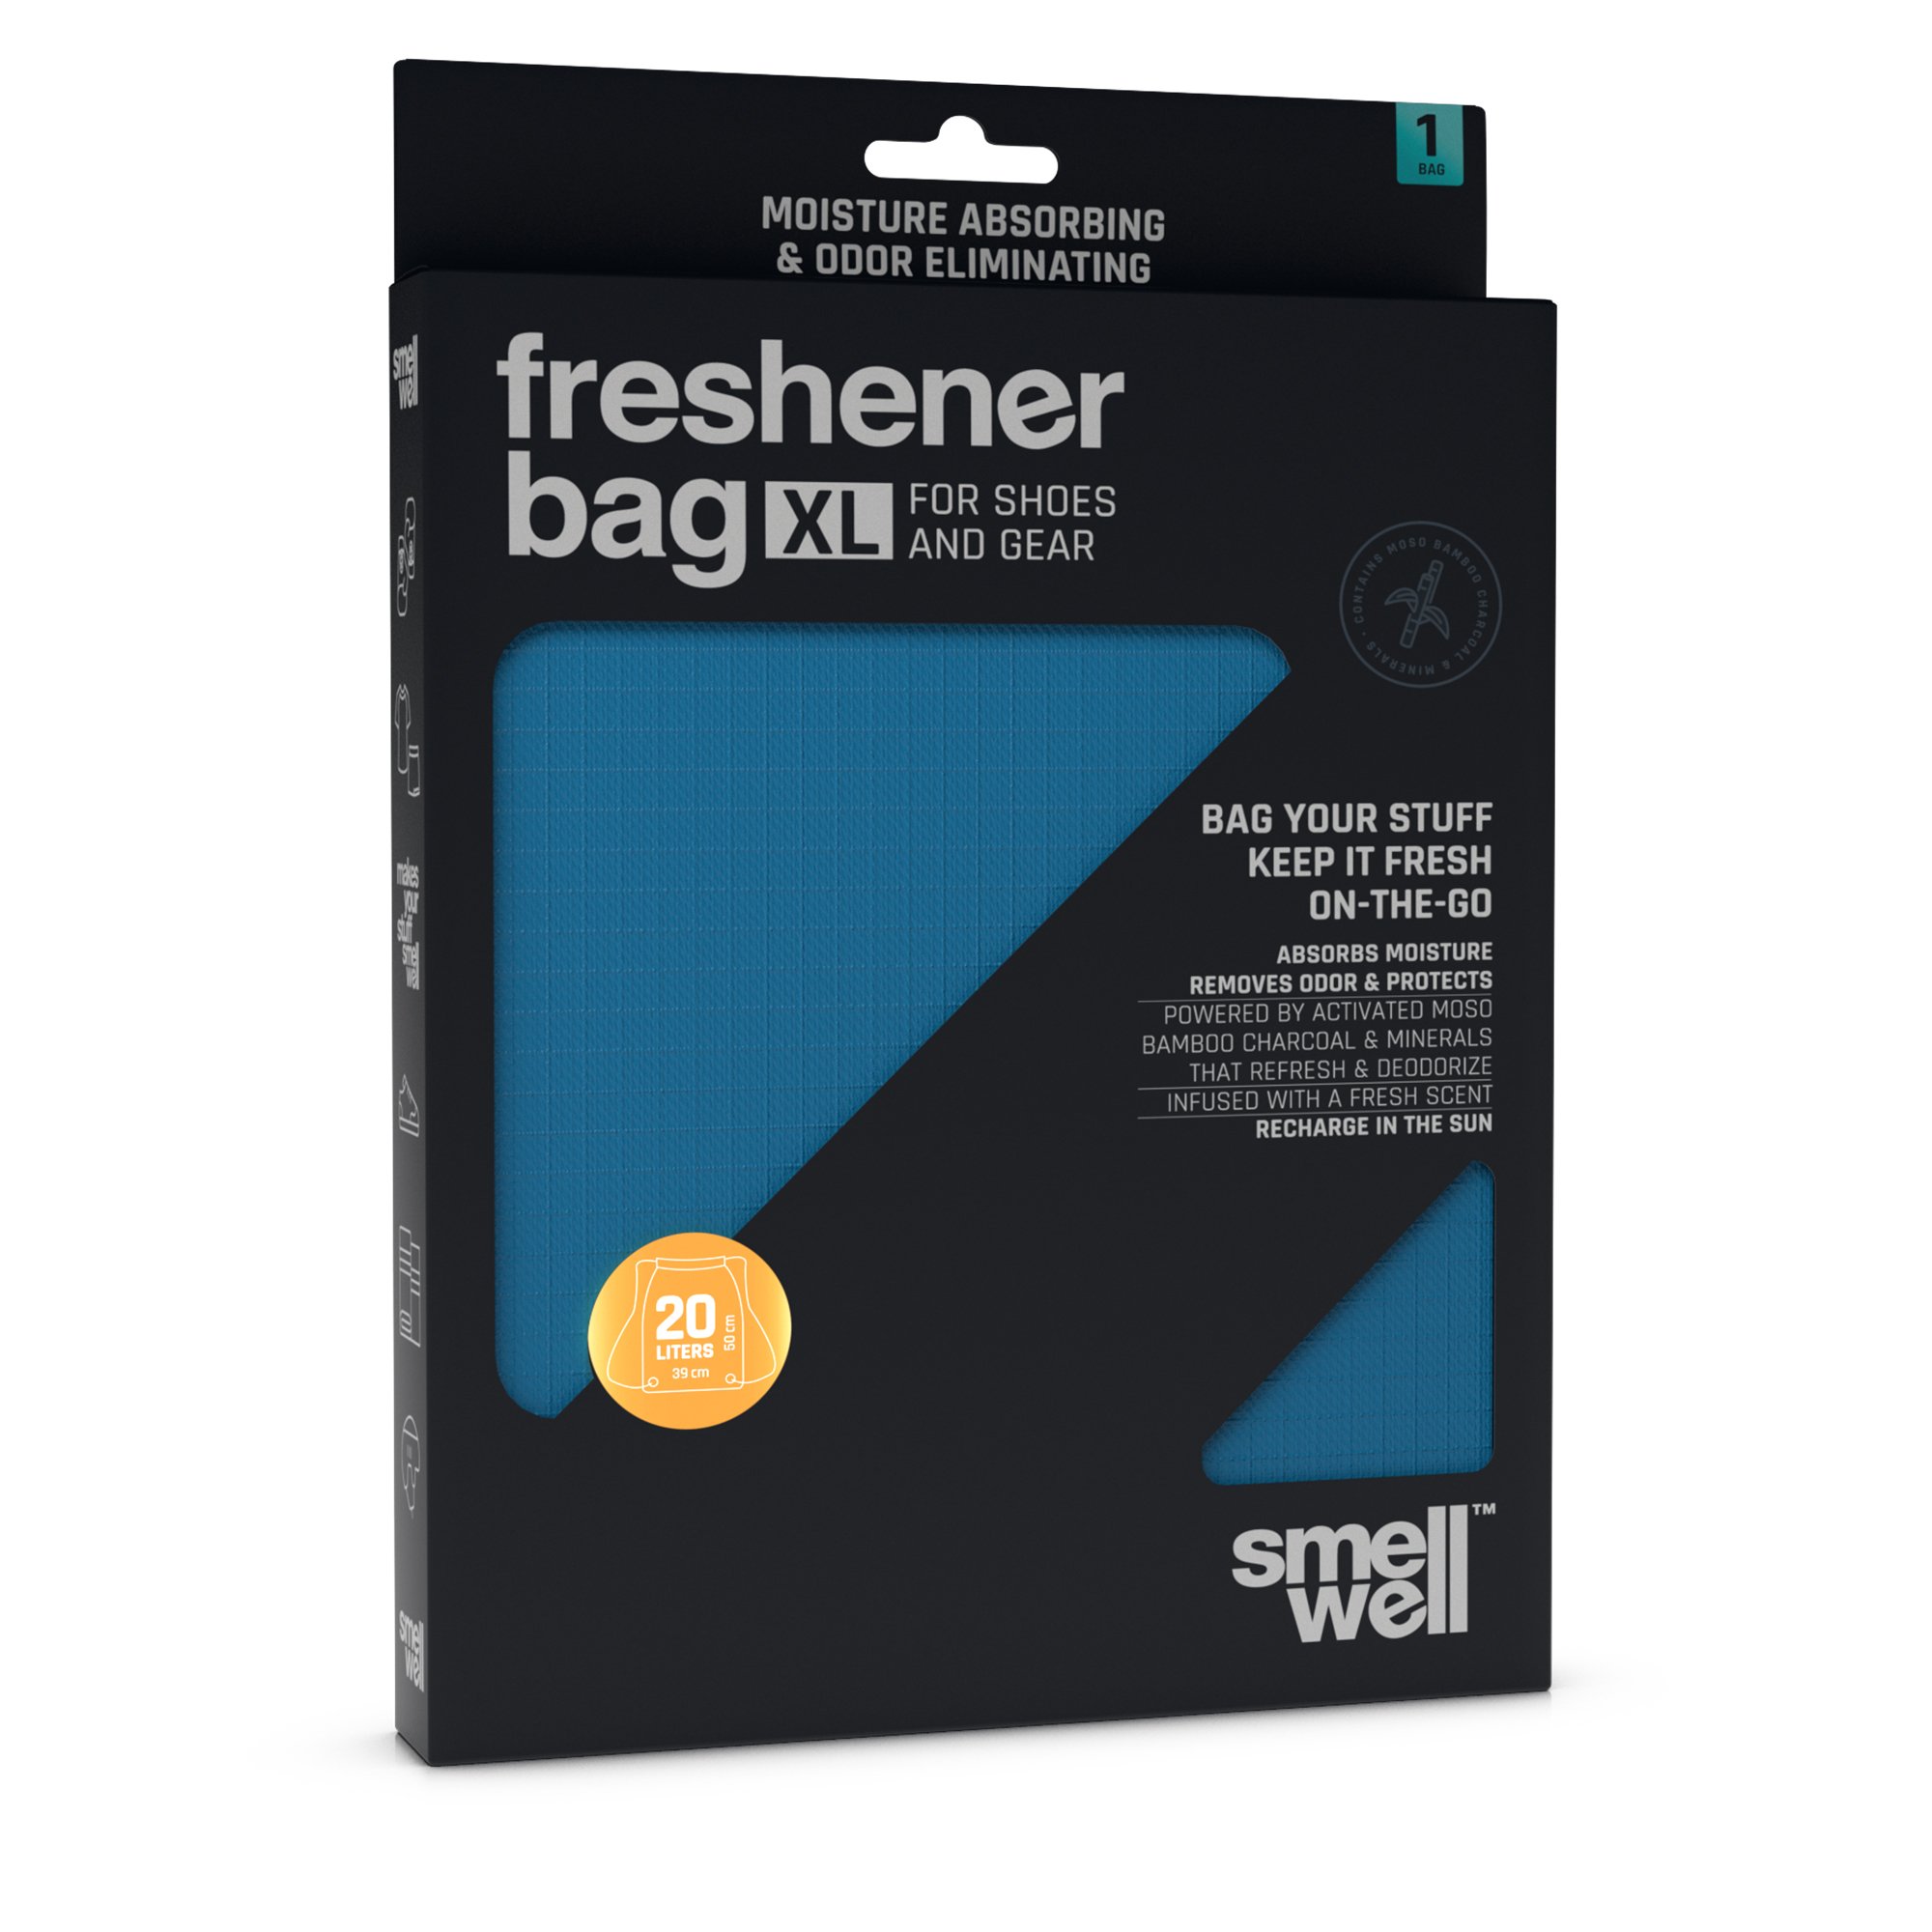 SmellWell Freshener Bags XL